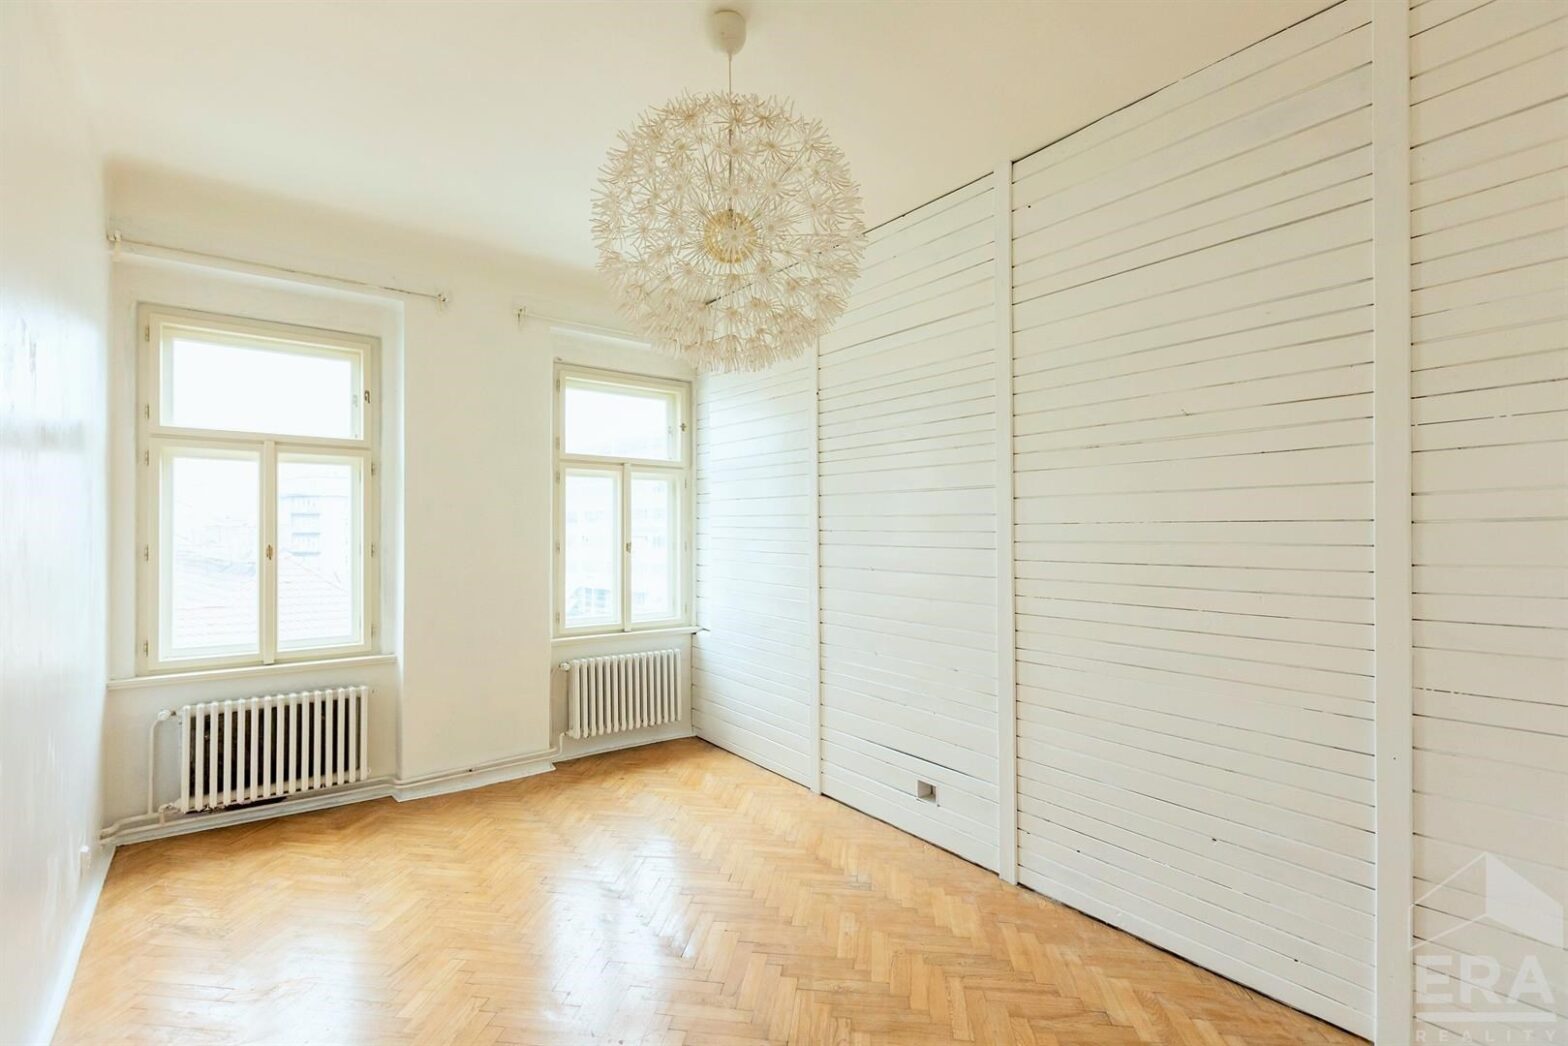 Prostorný, slunný, nezařízený byt 5+2, 220m2, balkon, ul. Na Bělidle, Praha 5 – Smíchov – Volný ihned